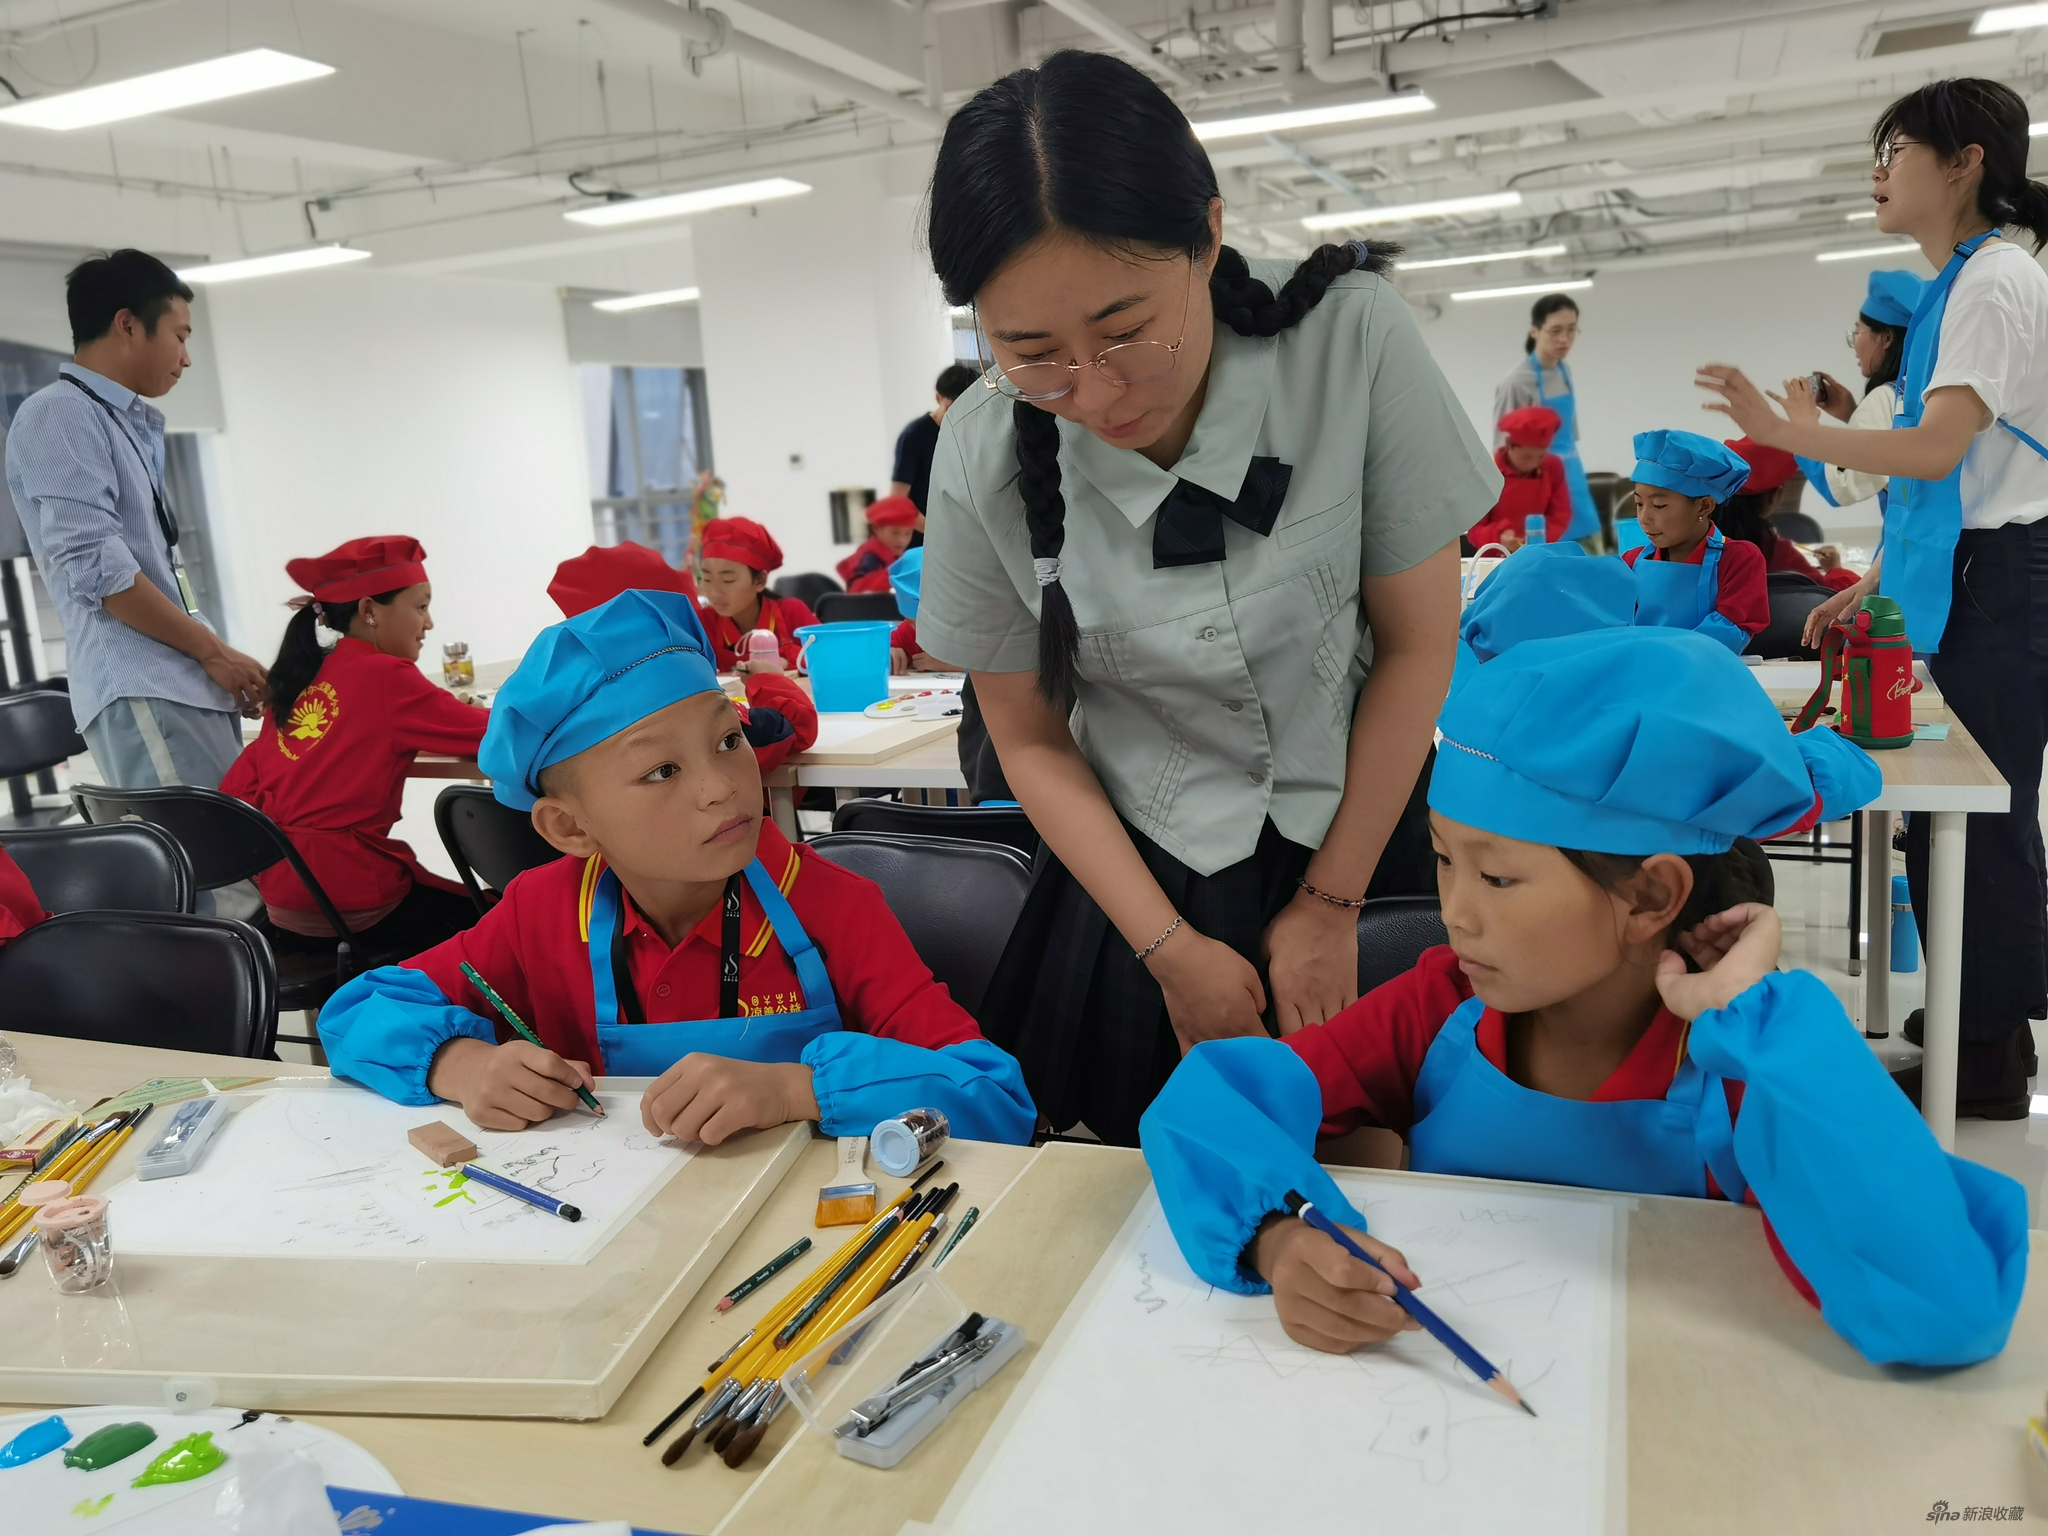 中国人民大学艺术学院硕士研究生郑璐在给孩子们上课